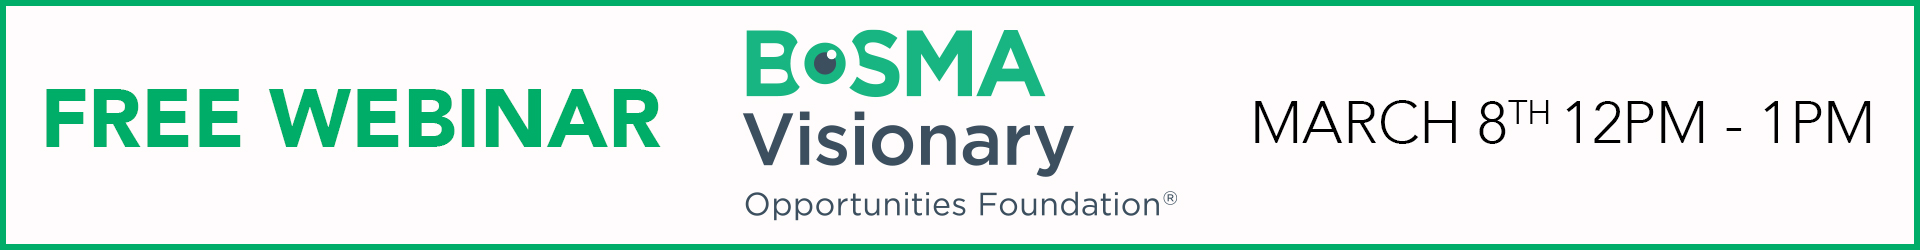 Bosma visionaries Free webinar